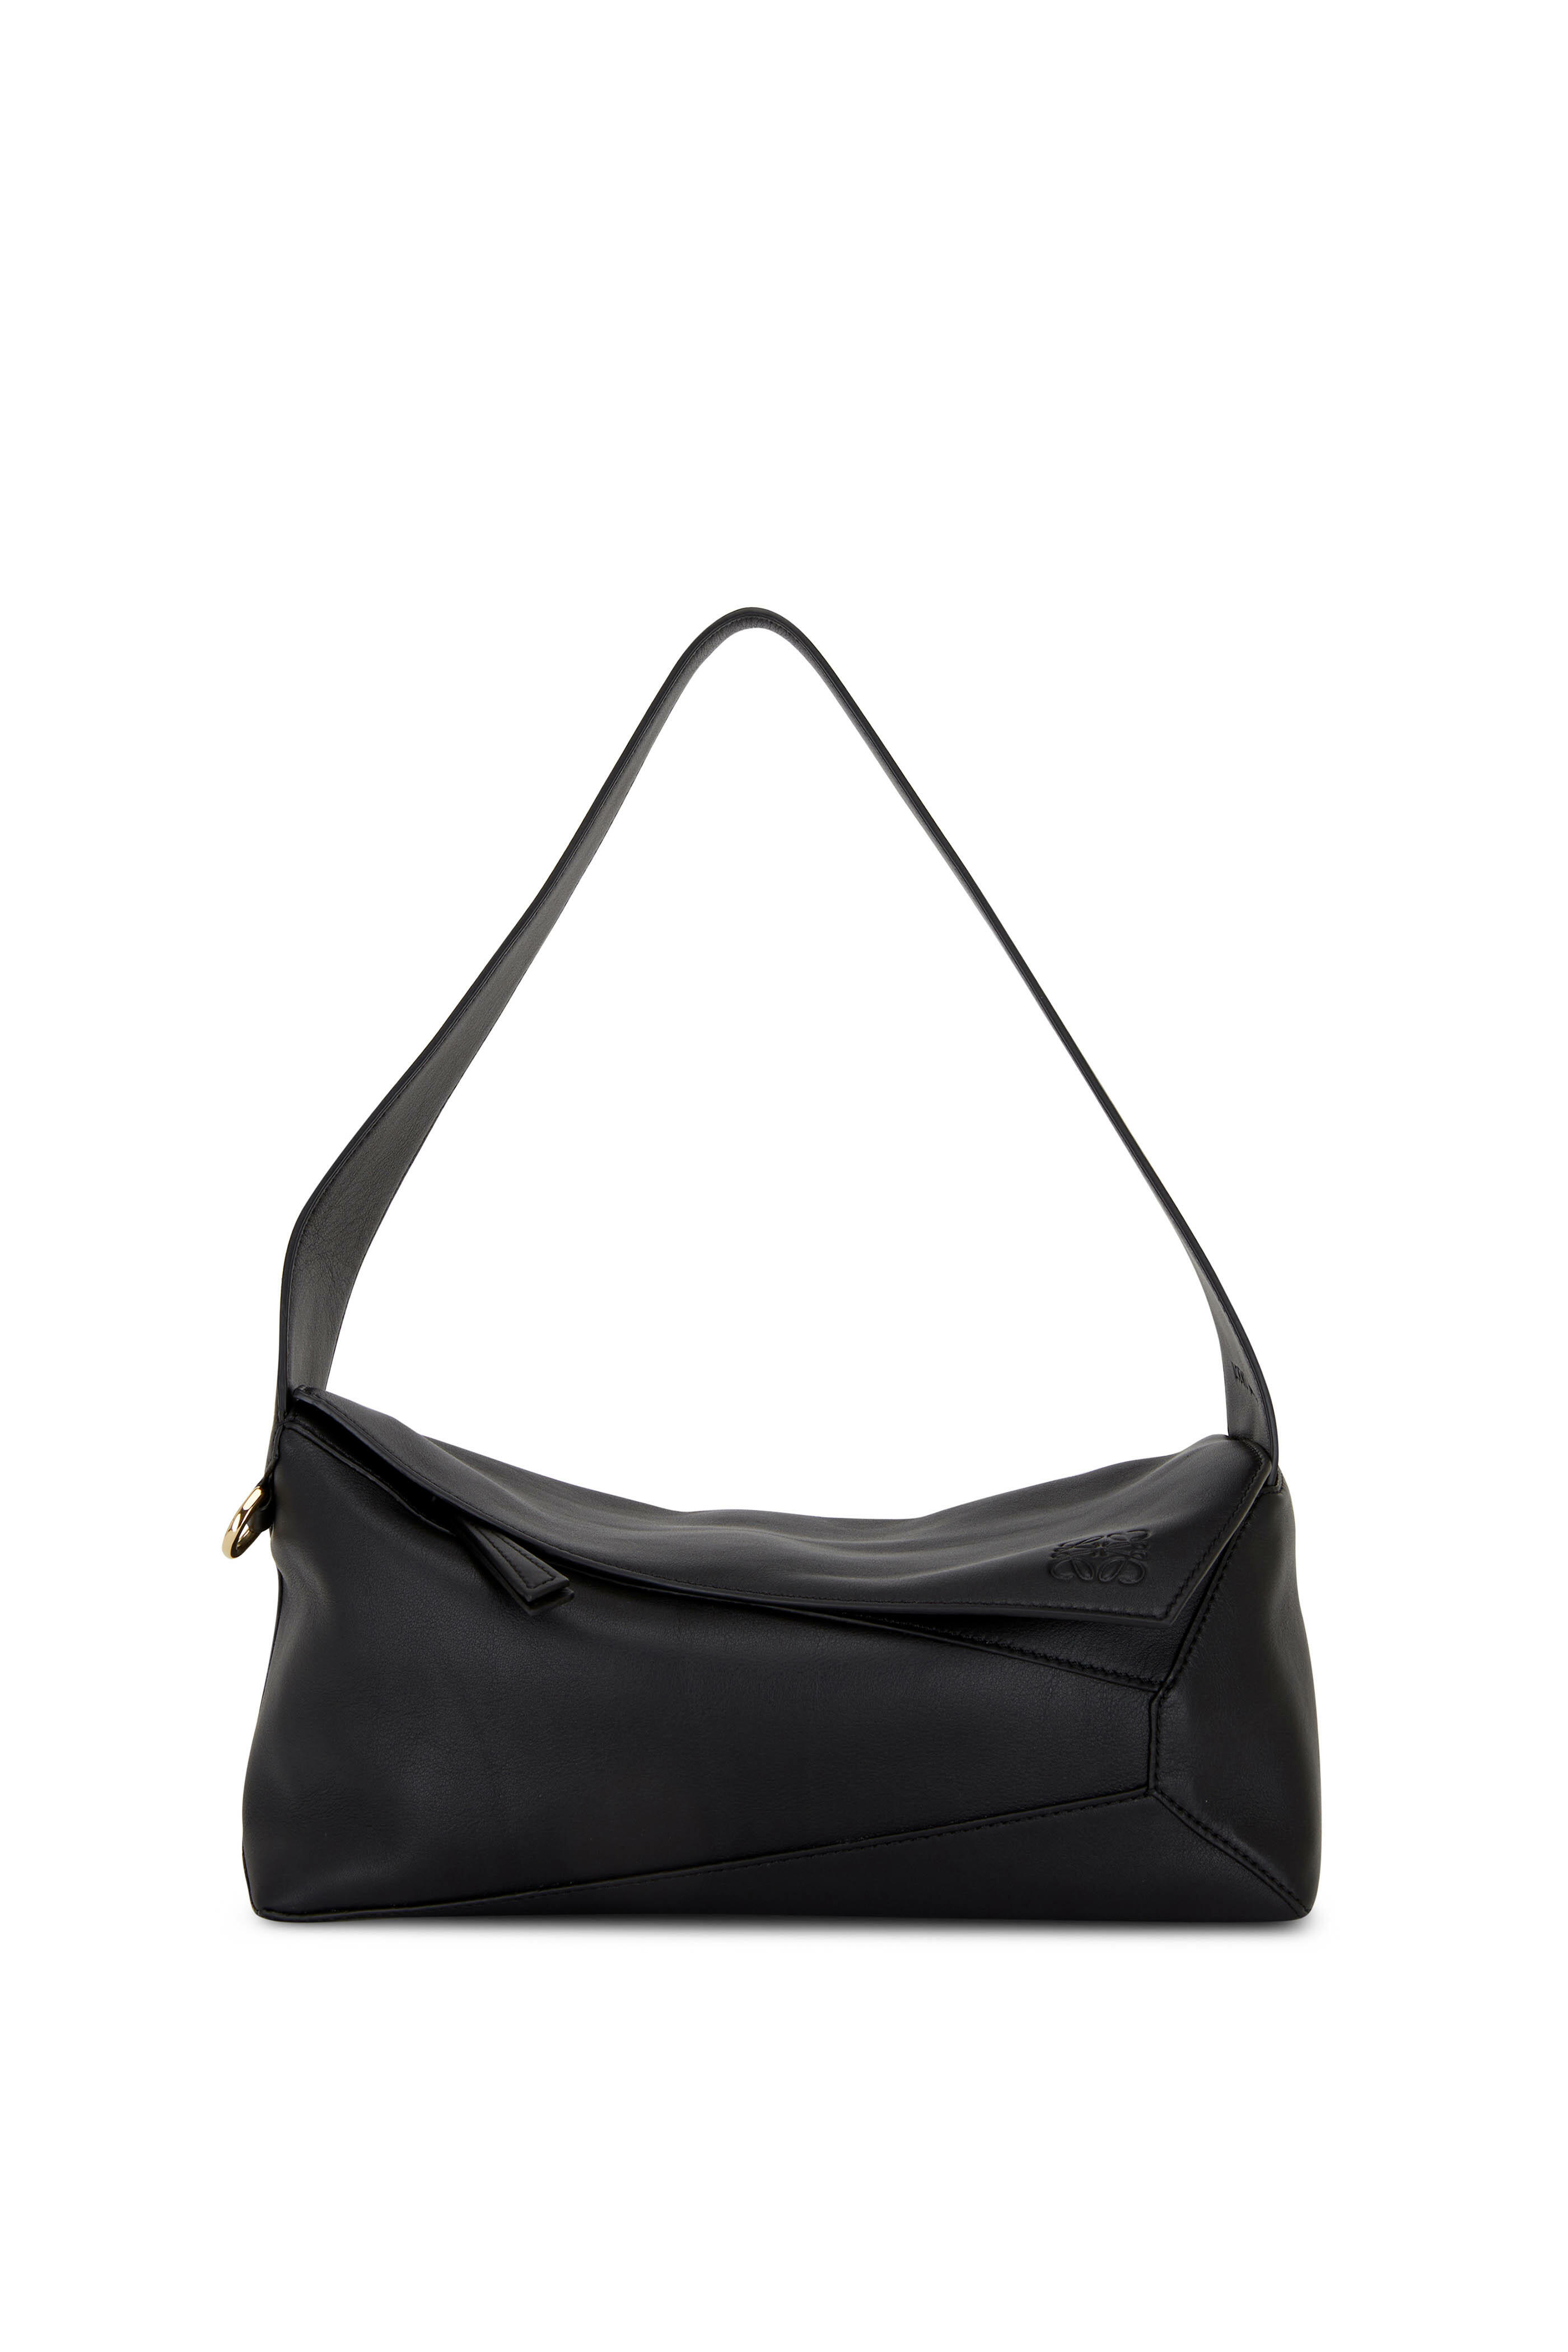 Loewe Puzzle Hobo Bag in Black